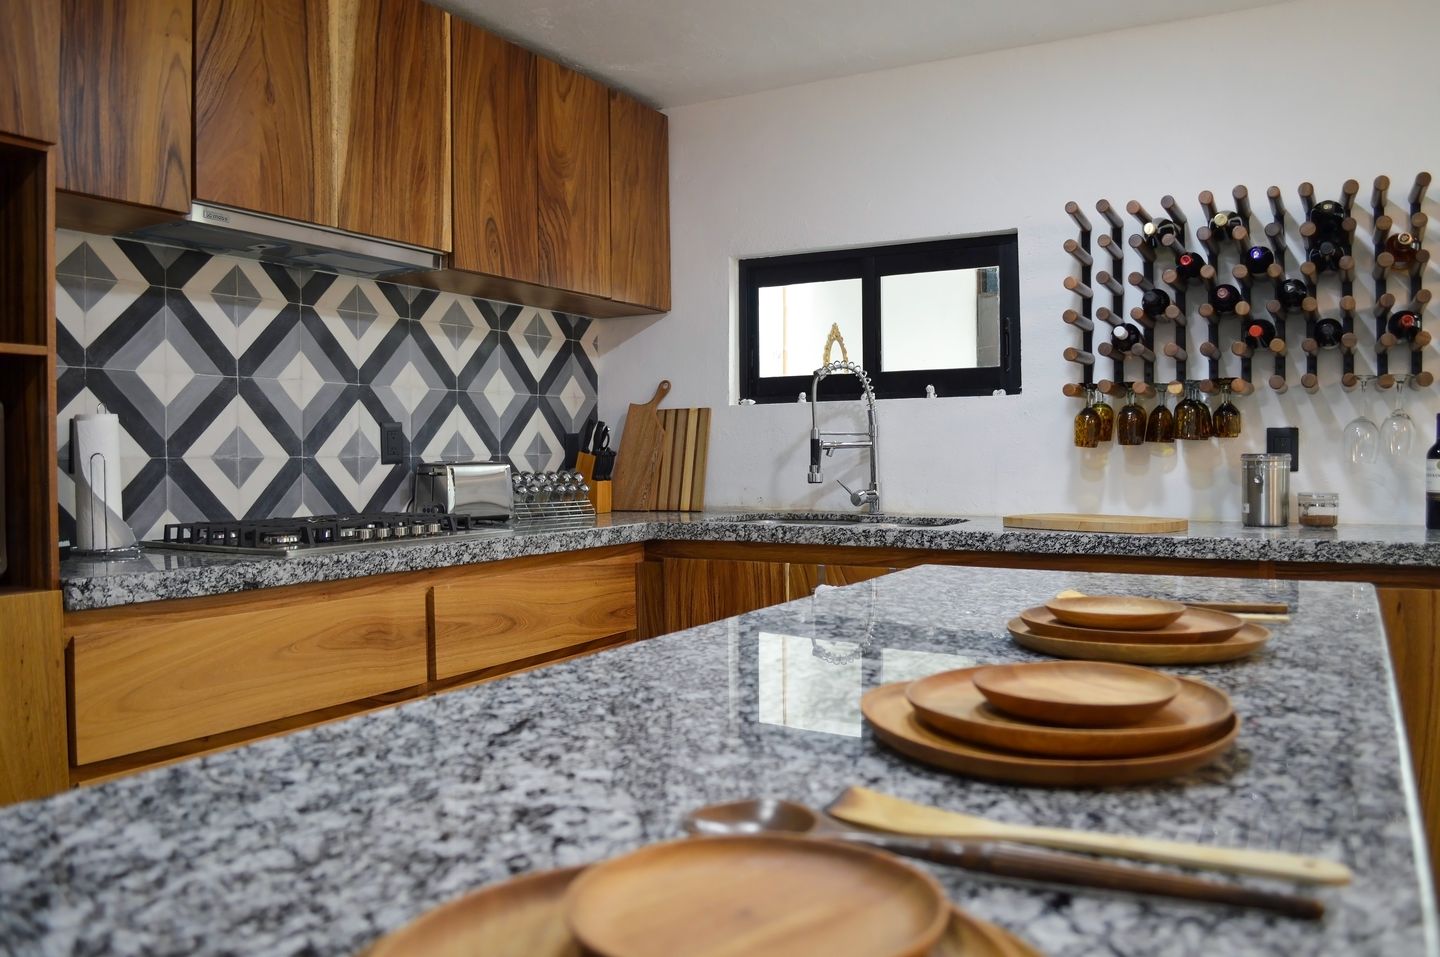 Countertop granit bisa jadi alternatif untuk memberi tampilan dapur yang mewah.